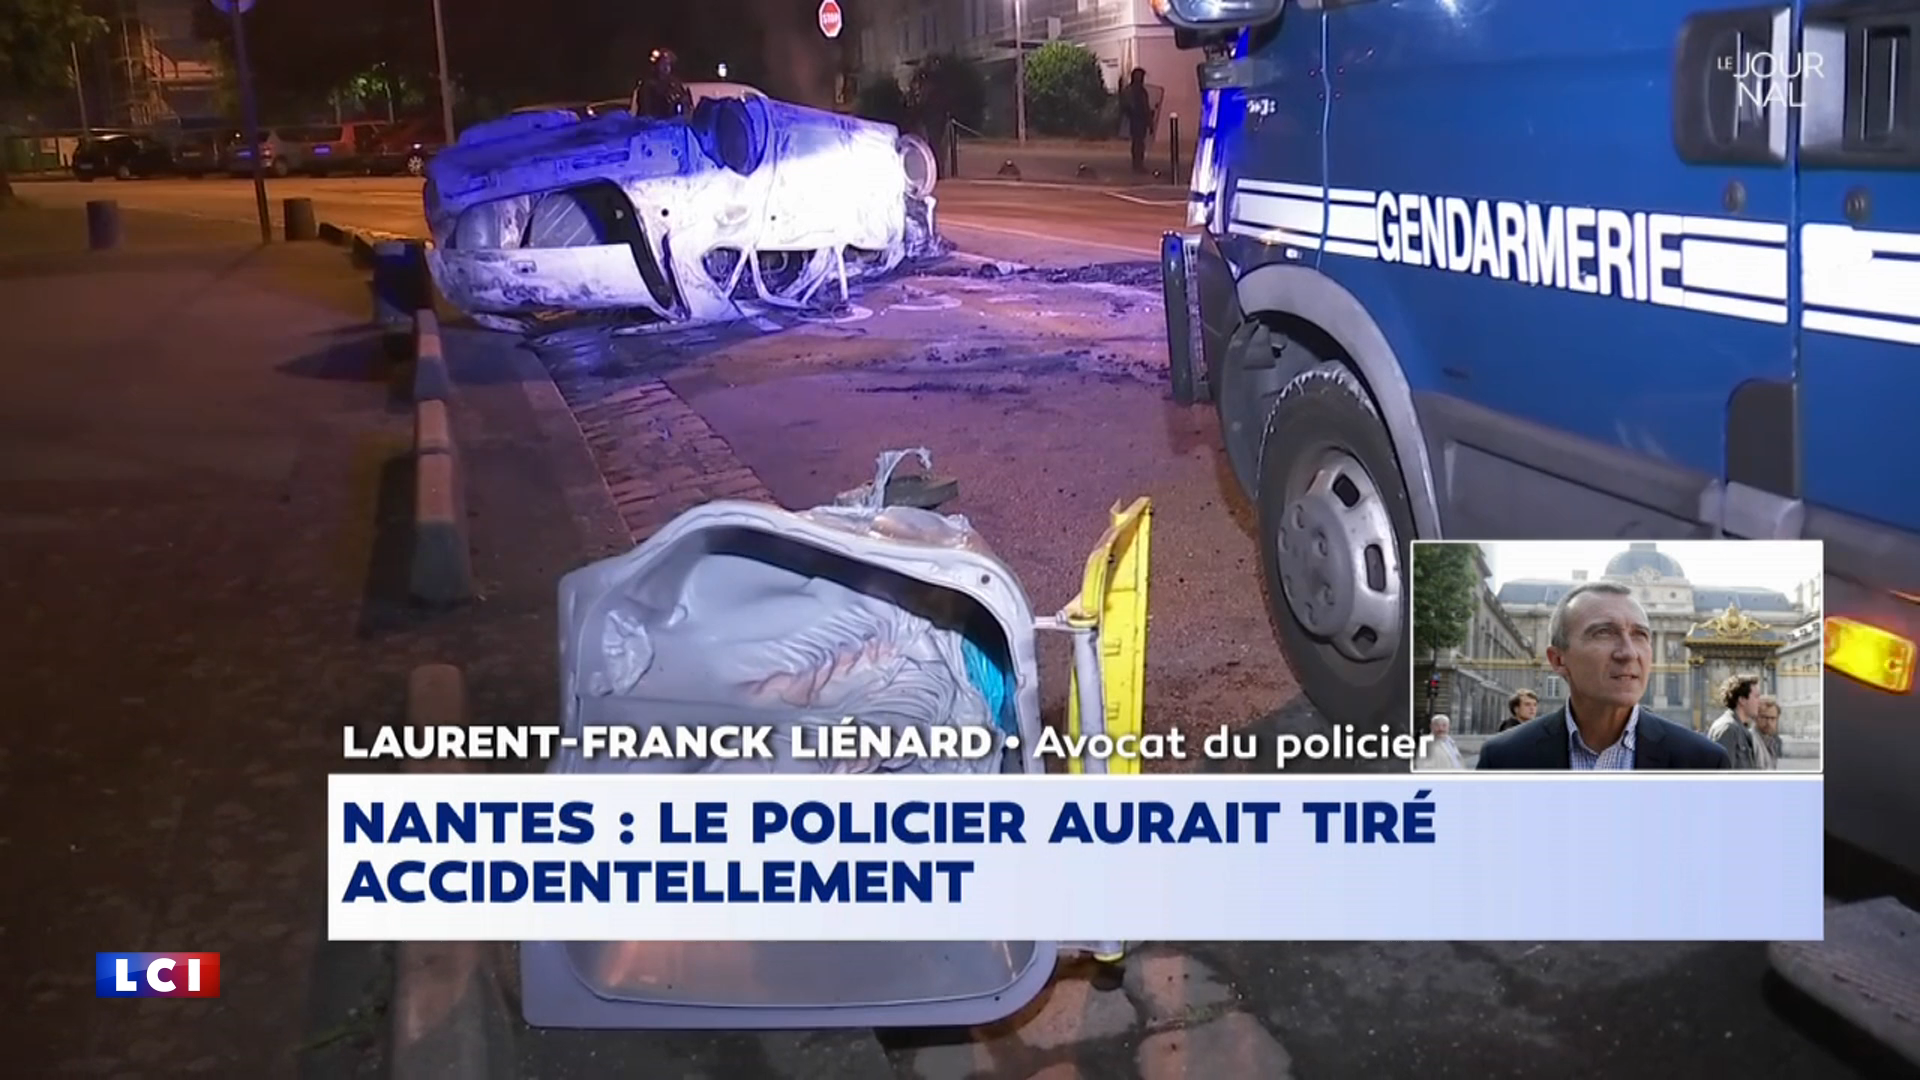 Laurent-Franck Liénard, avocat du policier : "Le premier réflexe de la personne qui se sent autant coupable, c'est le déni"